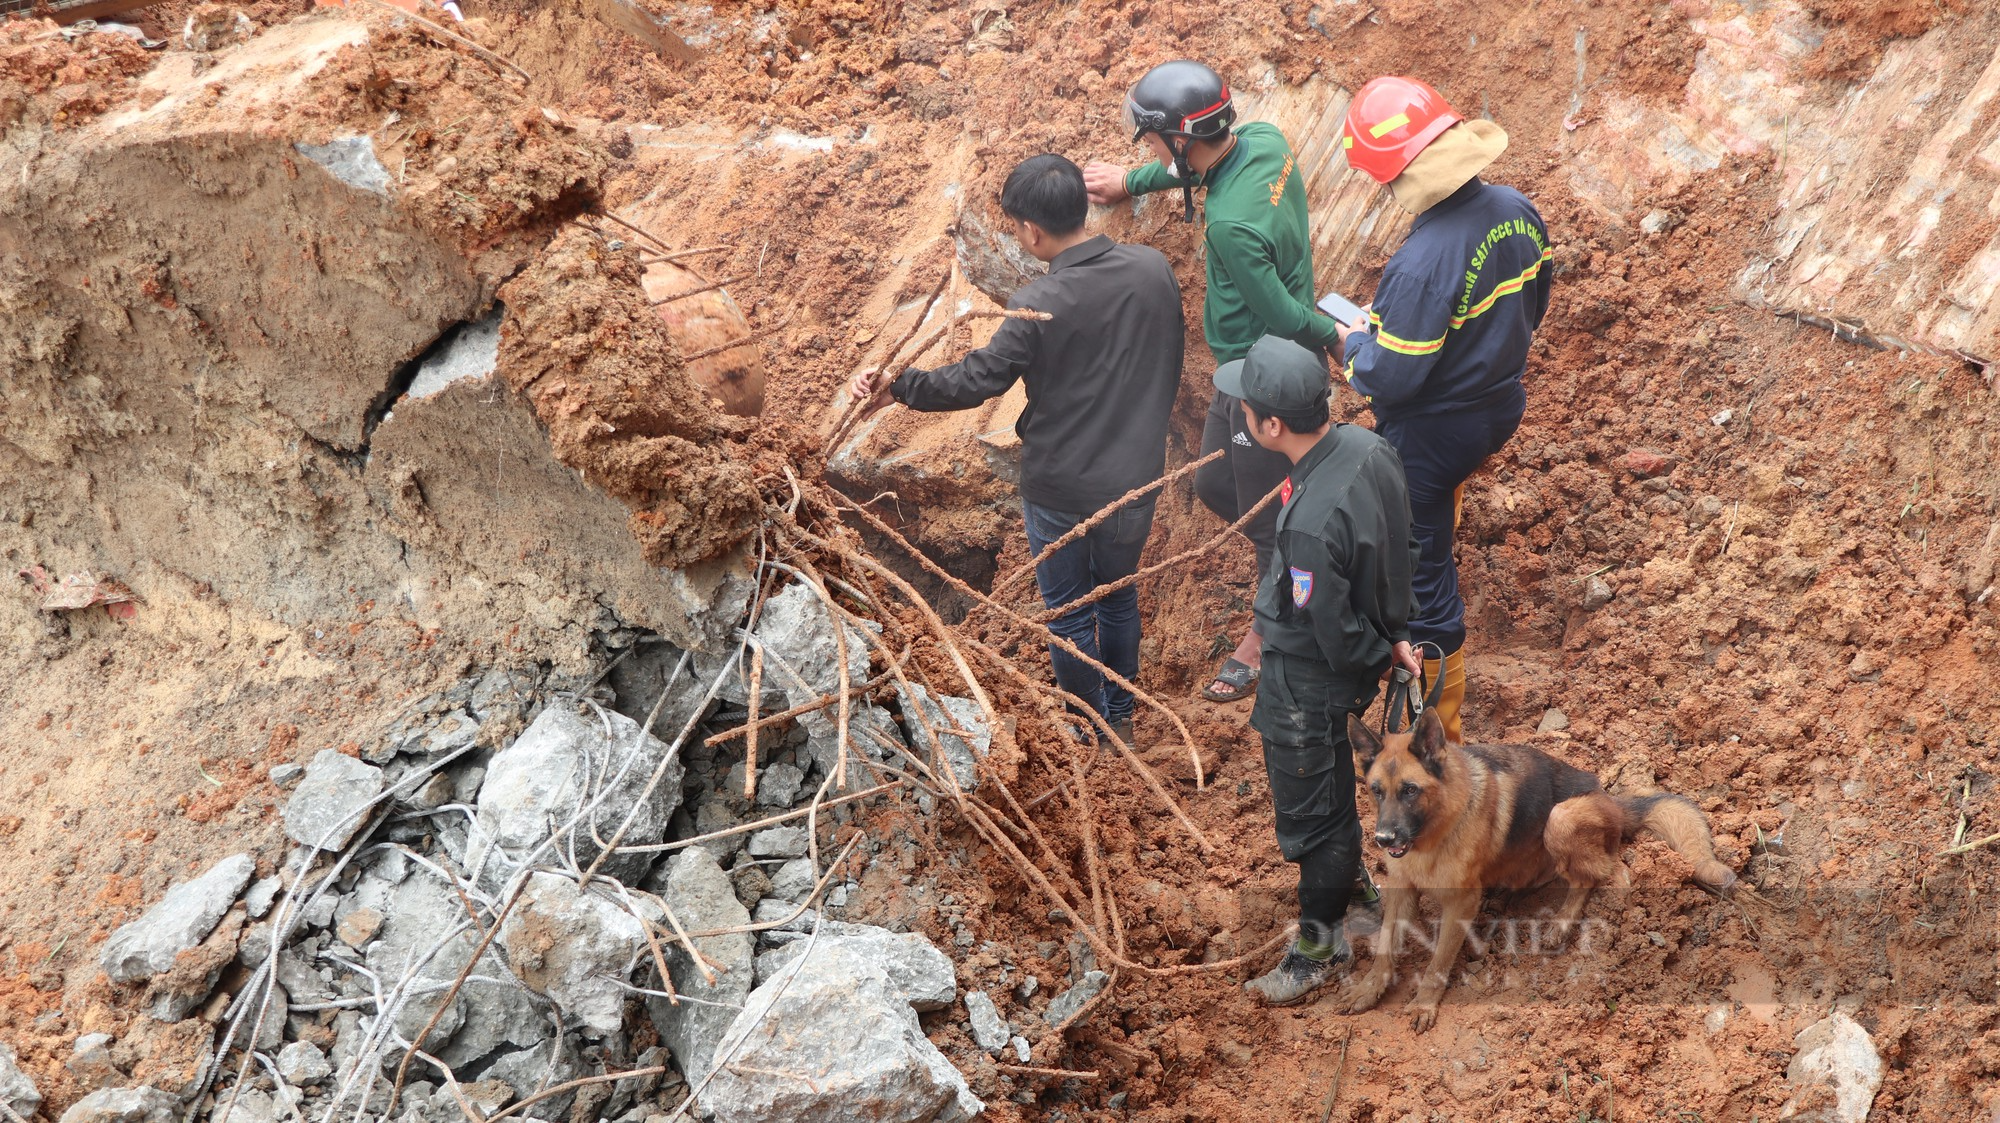 Sở Xây dựng báo cáo UBND tỉnh Lâm Đồng nguyên nhân ban đầu vụ sạt lở taluy nghiêm trọng tại Đà Lạt - Ảnh 2.